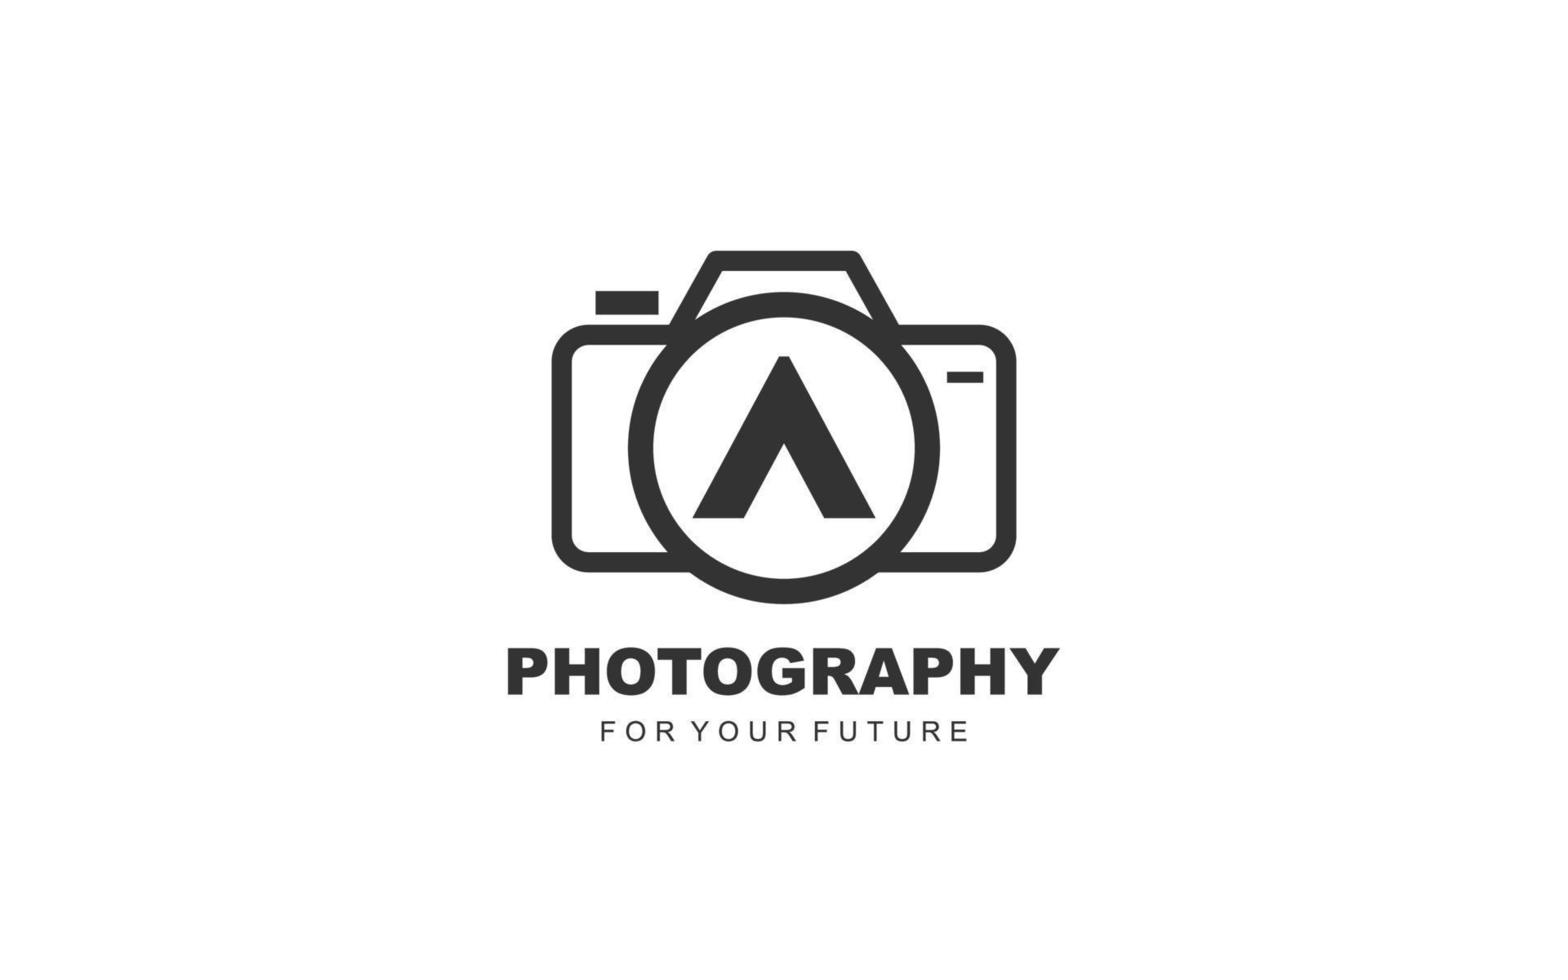 een logo fotografie voor branding bedrijf. camera sjabloon vector illustratie voor uw merk.